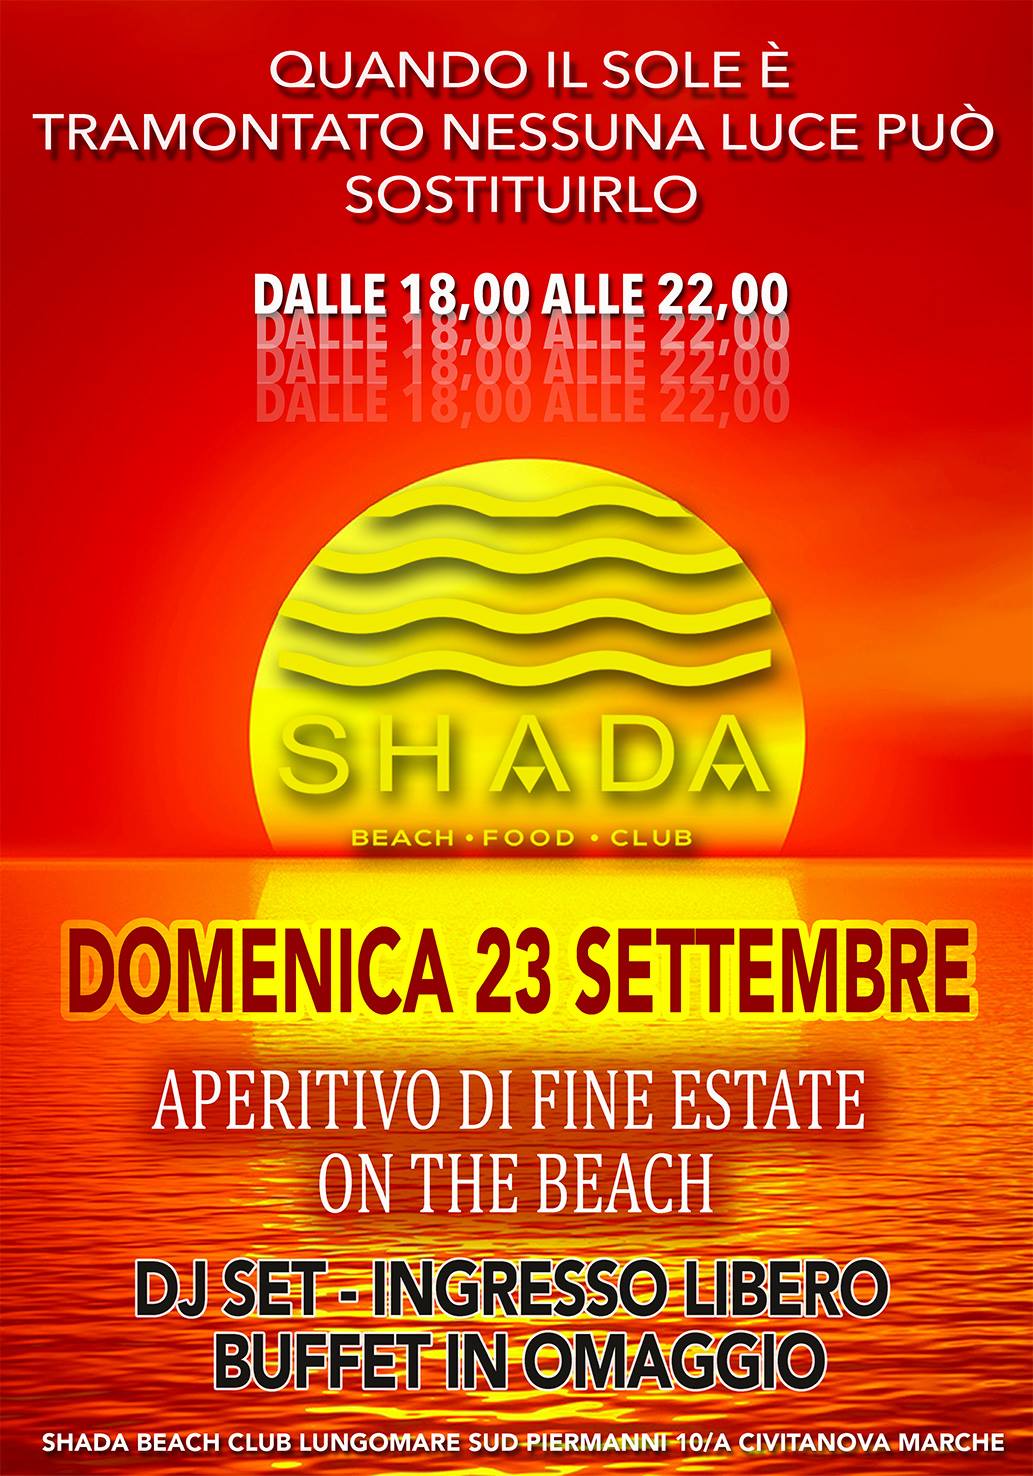 Aperitivo di fine estate Shada Beach Club Civitanova Marche